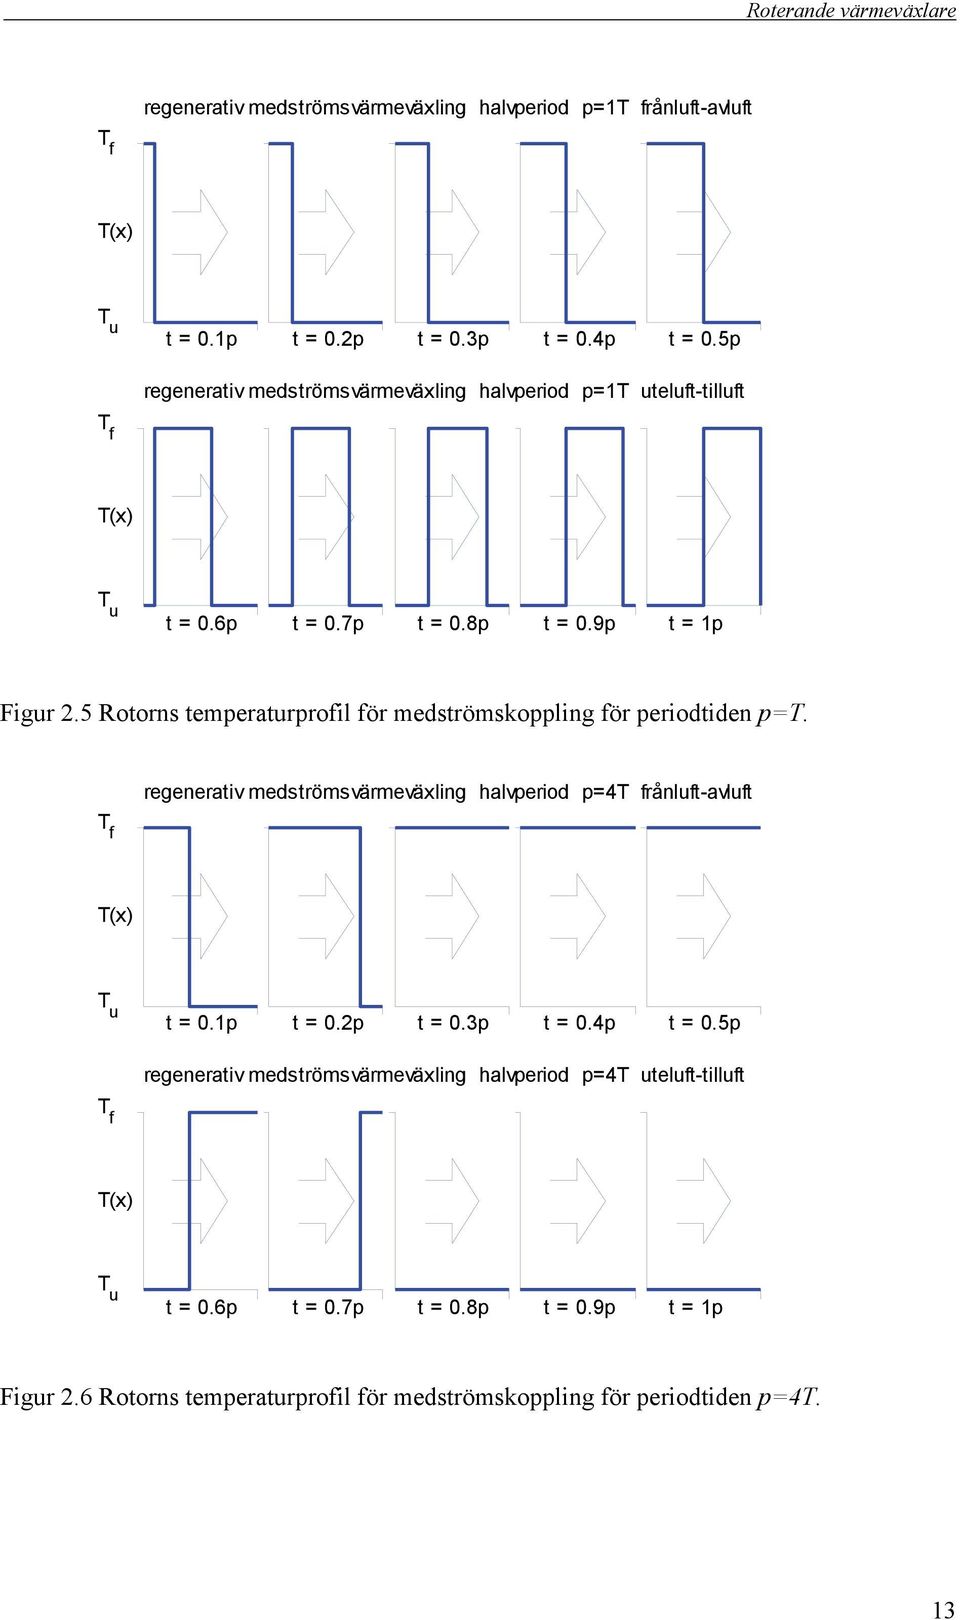 5 Rotorns temperaturprofil för medströmskoppling för periodtiden p=t.